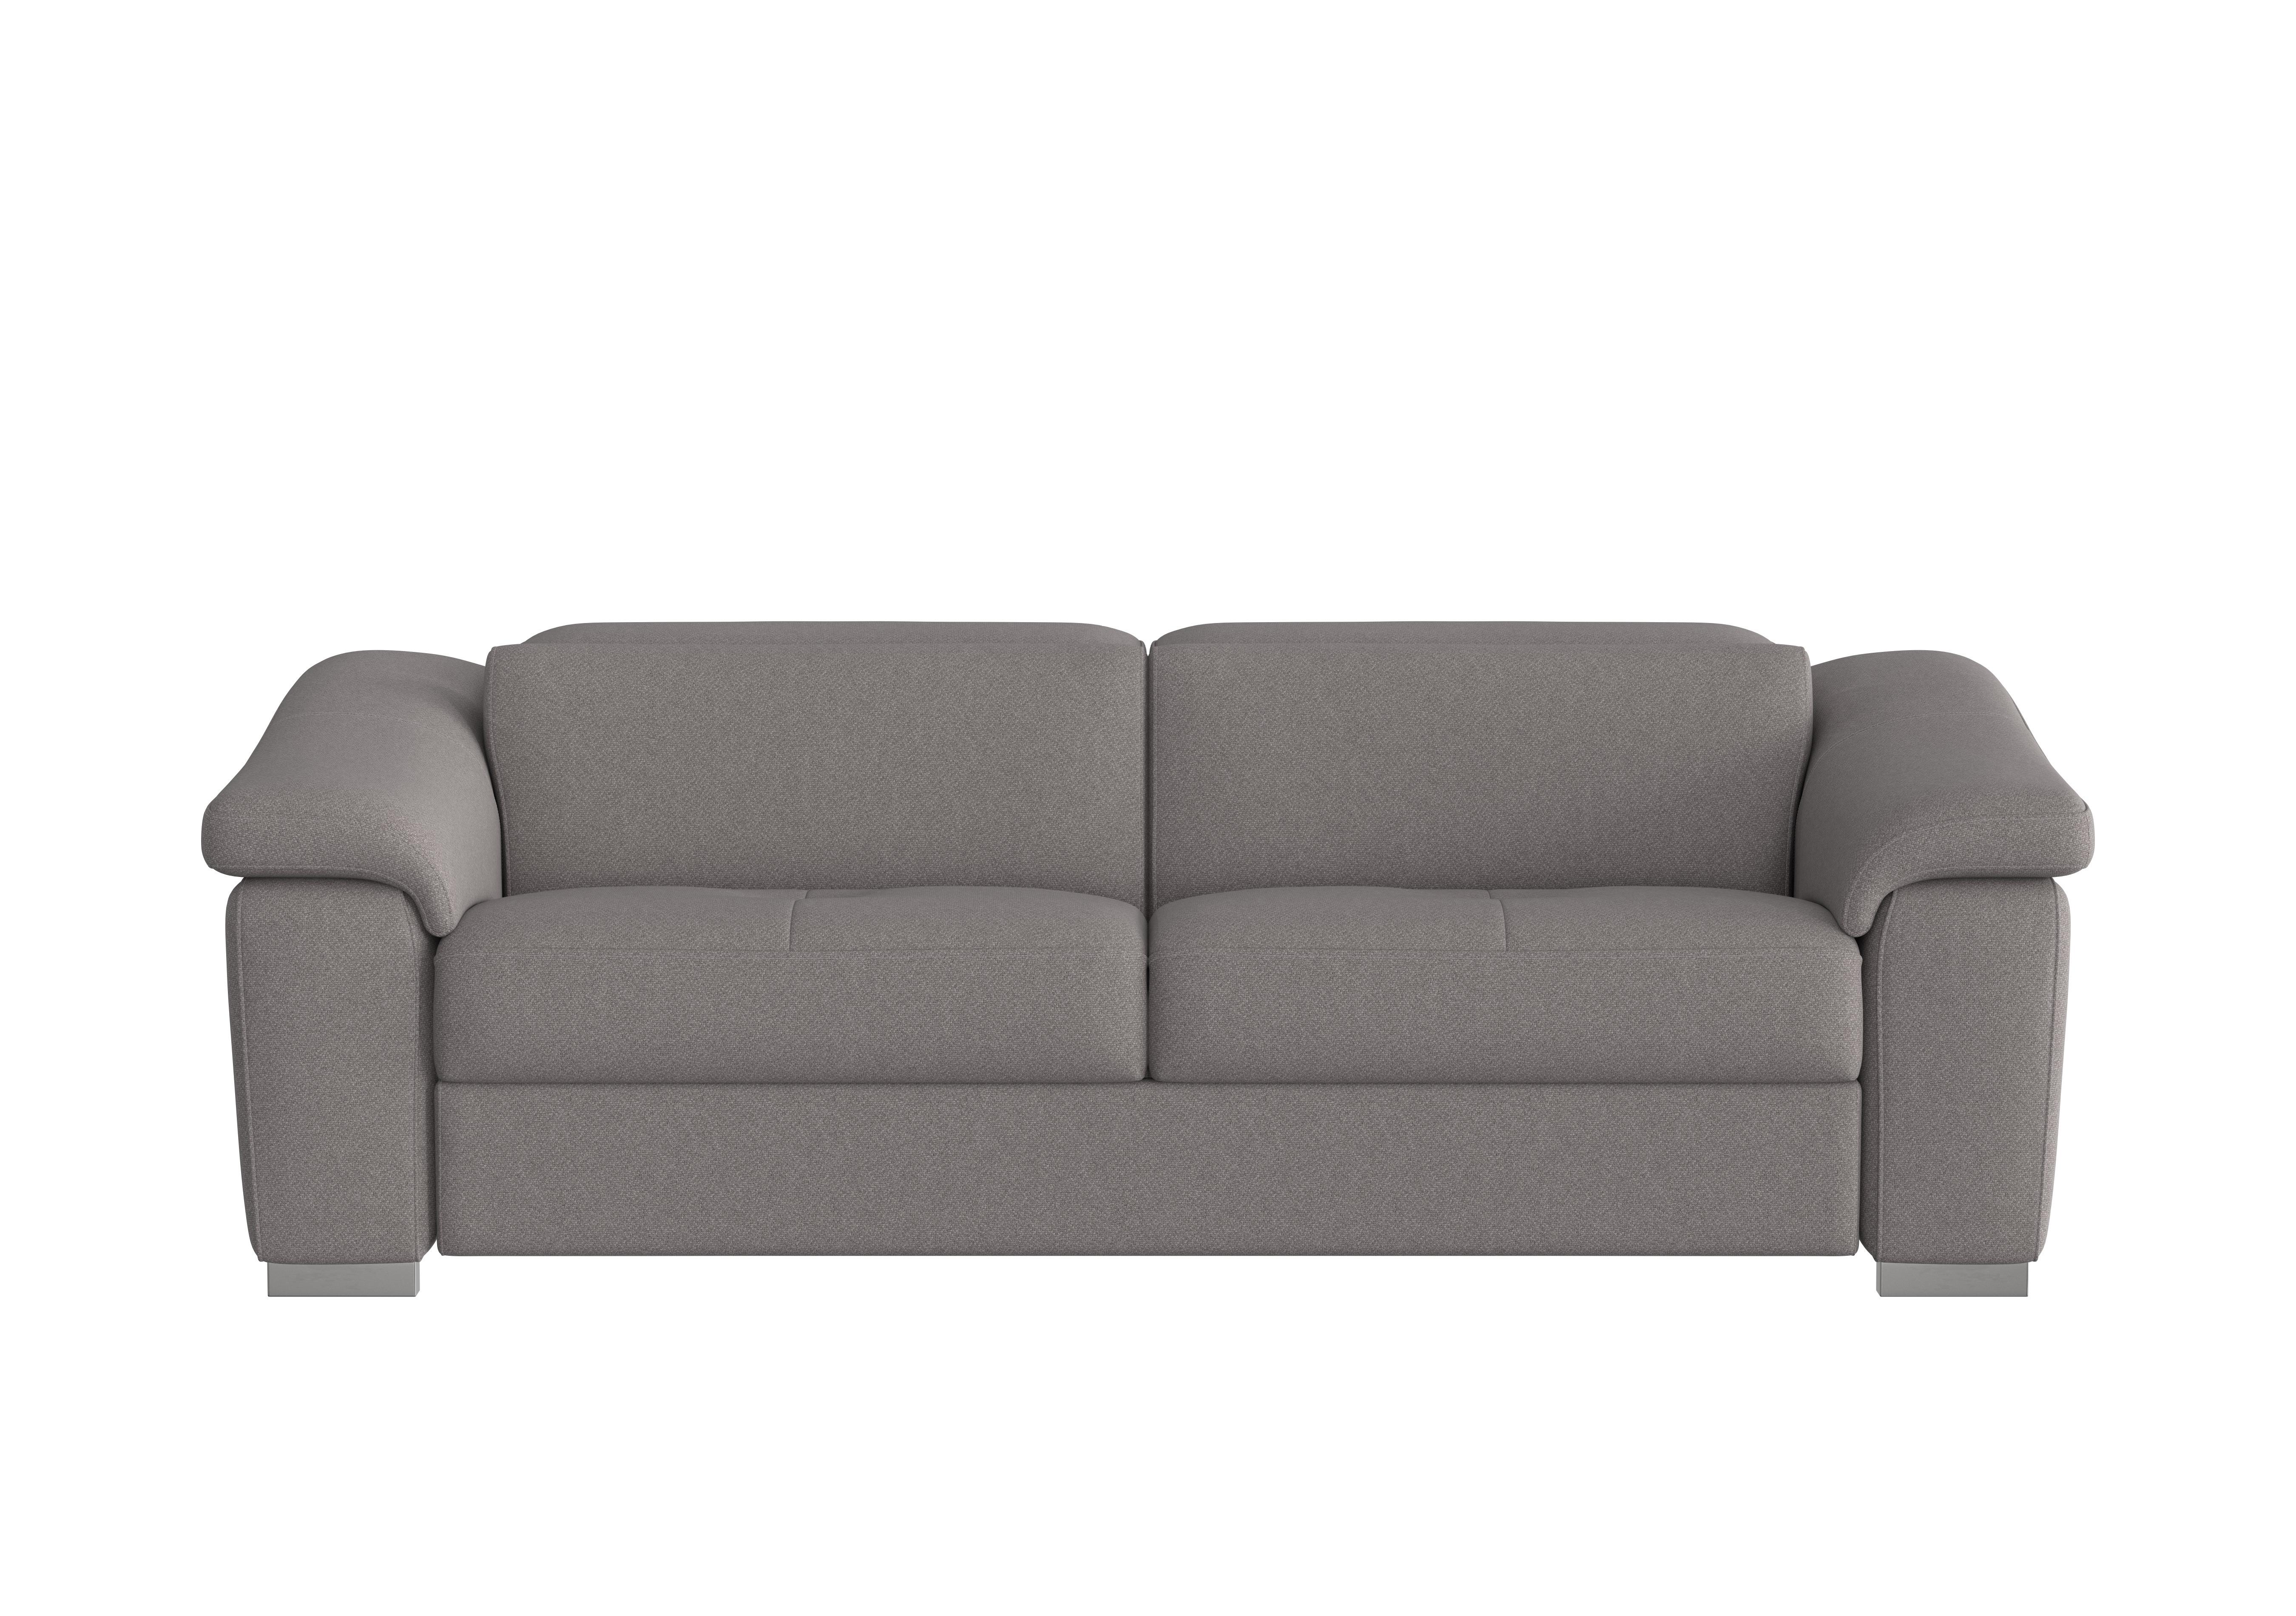 Galileo 3 Seater Fabric Sofa in Coupe Grigio Topo 609 Ch on Furniture Village